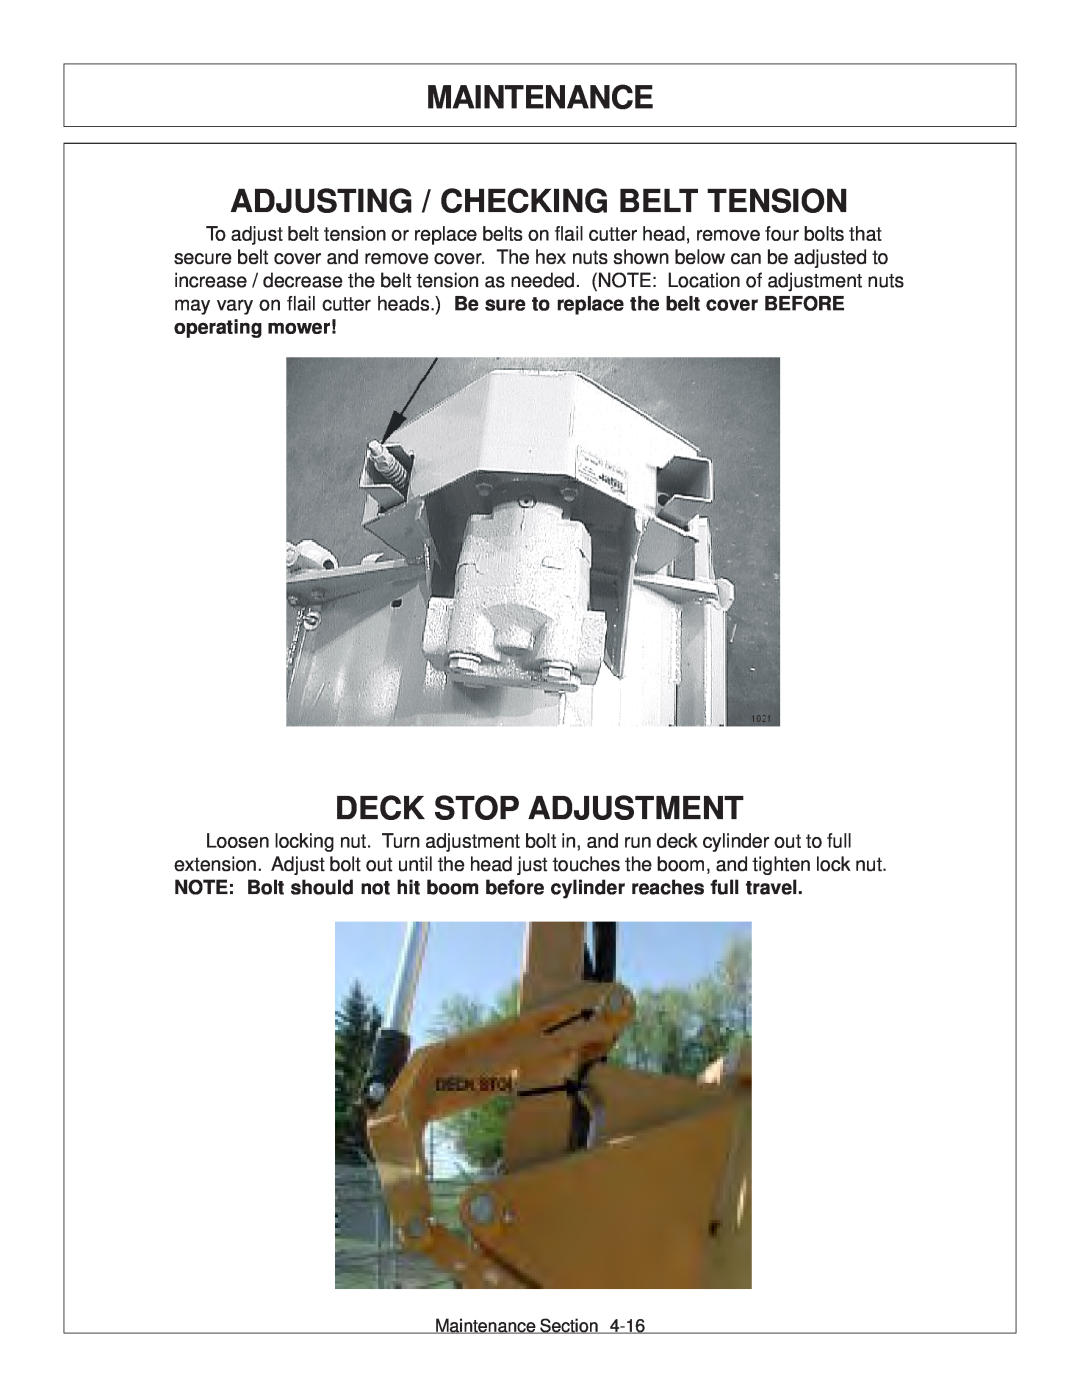 Tiger JD 62-6420 manual Adjusting / Checking Belt Tension, Deck Stop Adjustment, Maintenance 